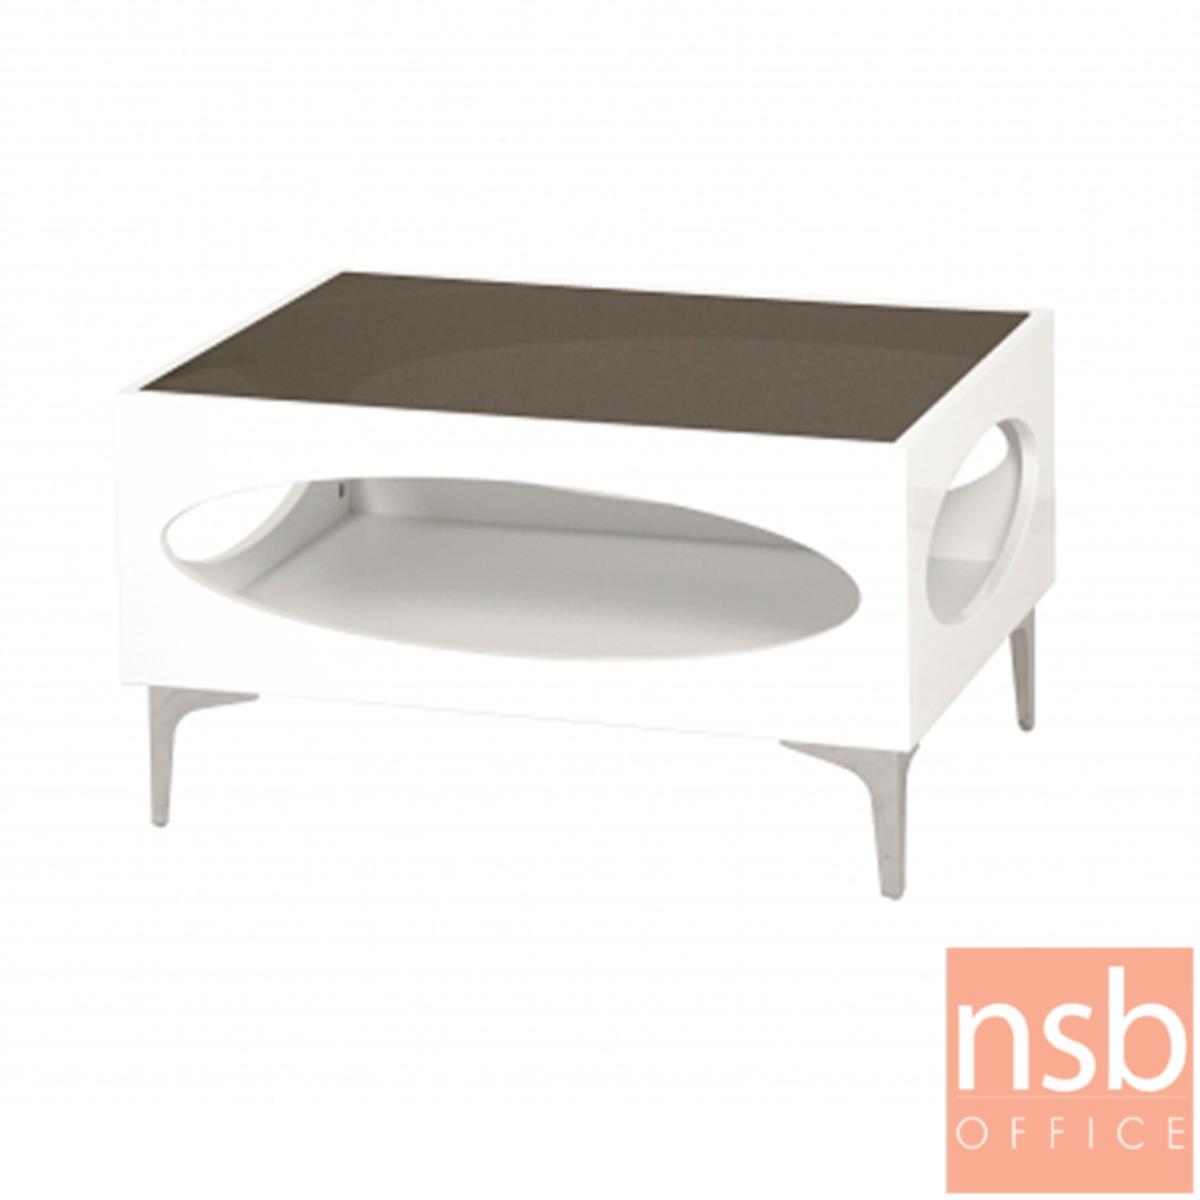 โต๊ะกลางโซฟากระจกสีชา  รุ่น GD-POK ขนาด 60W ,90W cm.  โครงไม้พ่นสีขาว ขาเหล็กชุบโครเมี่ยม